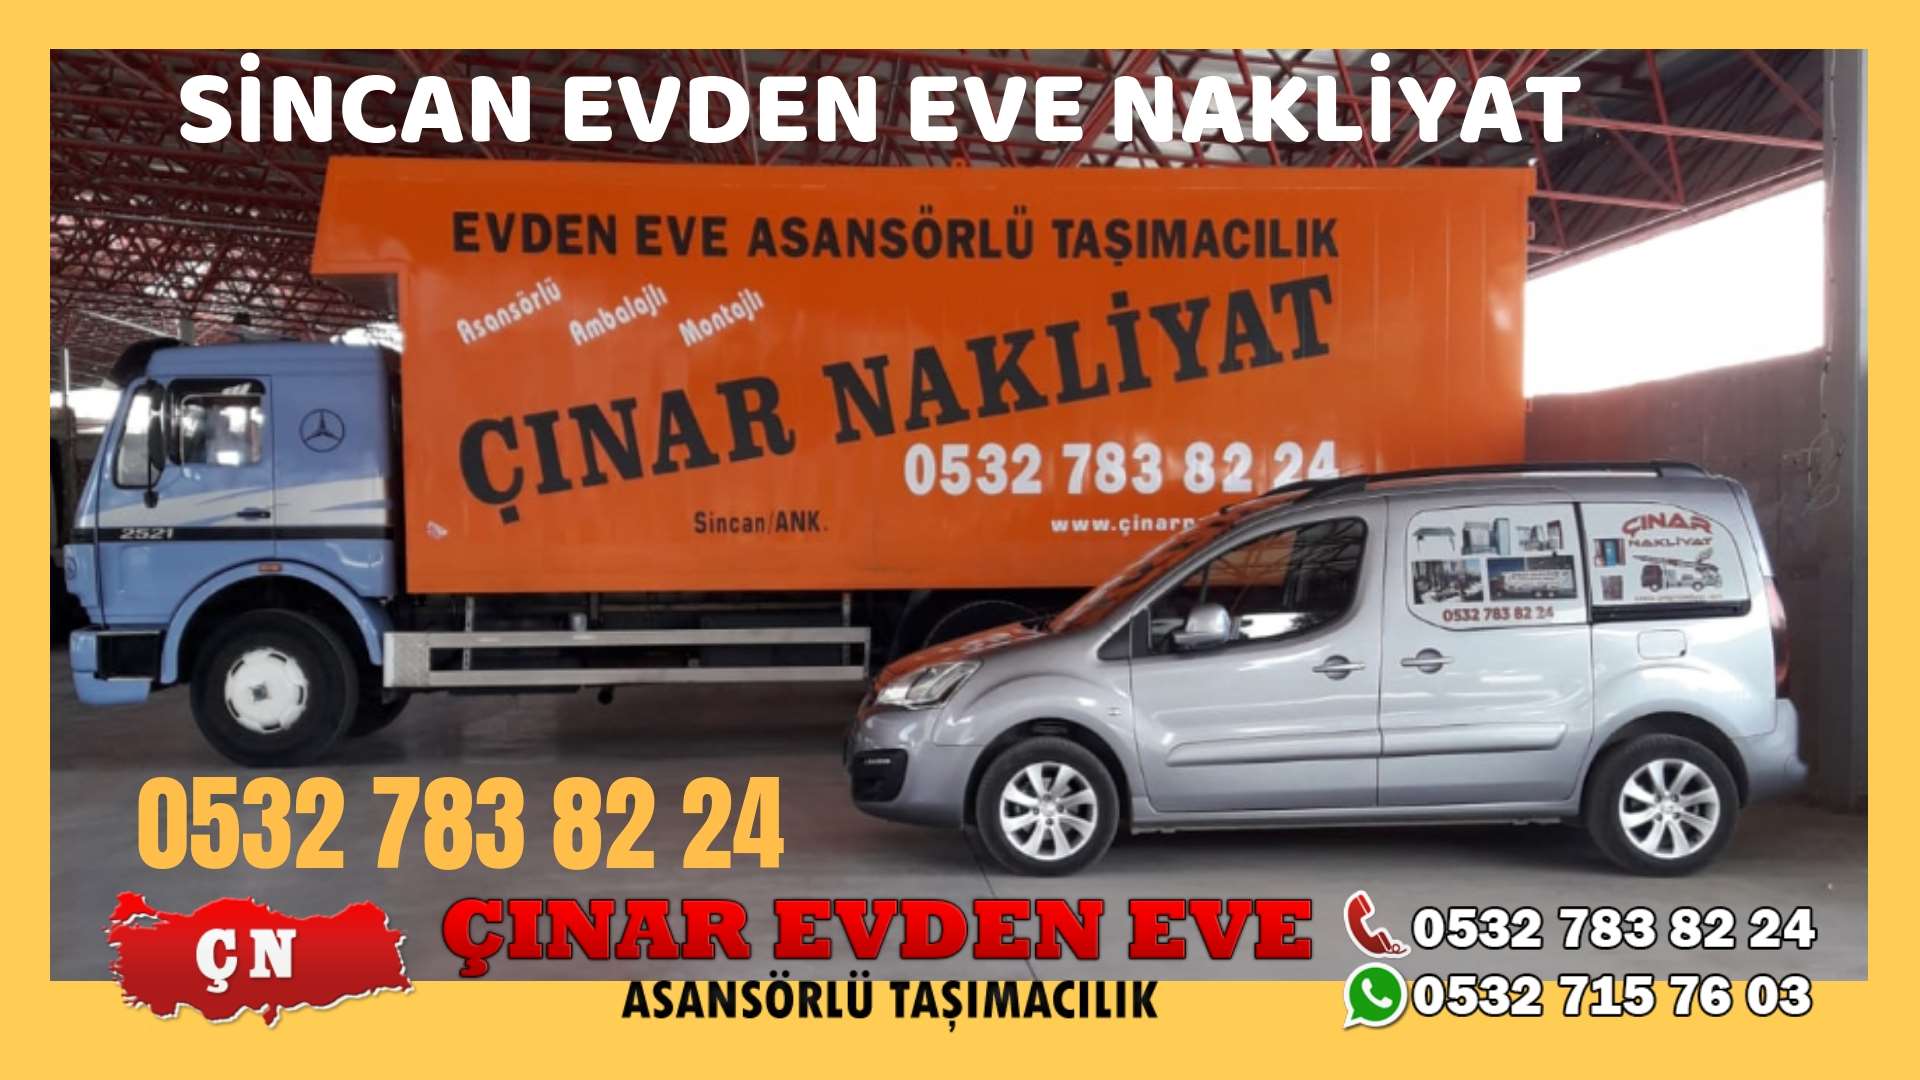 Ankara Susuz Mahallesi Evden eve ev taşıma sincan nakliye fiyatları 0532 715 76 03